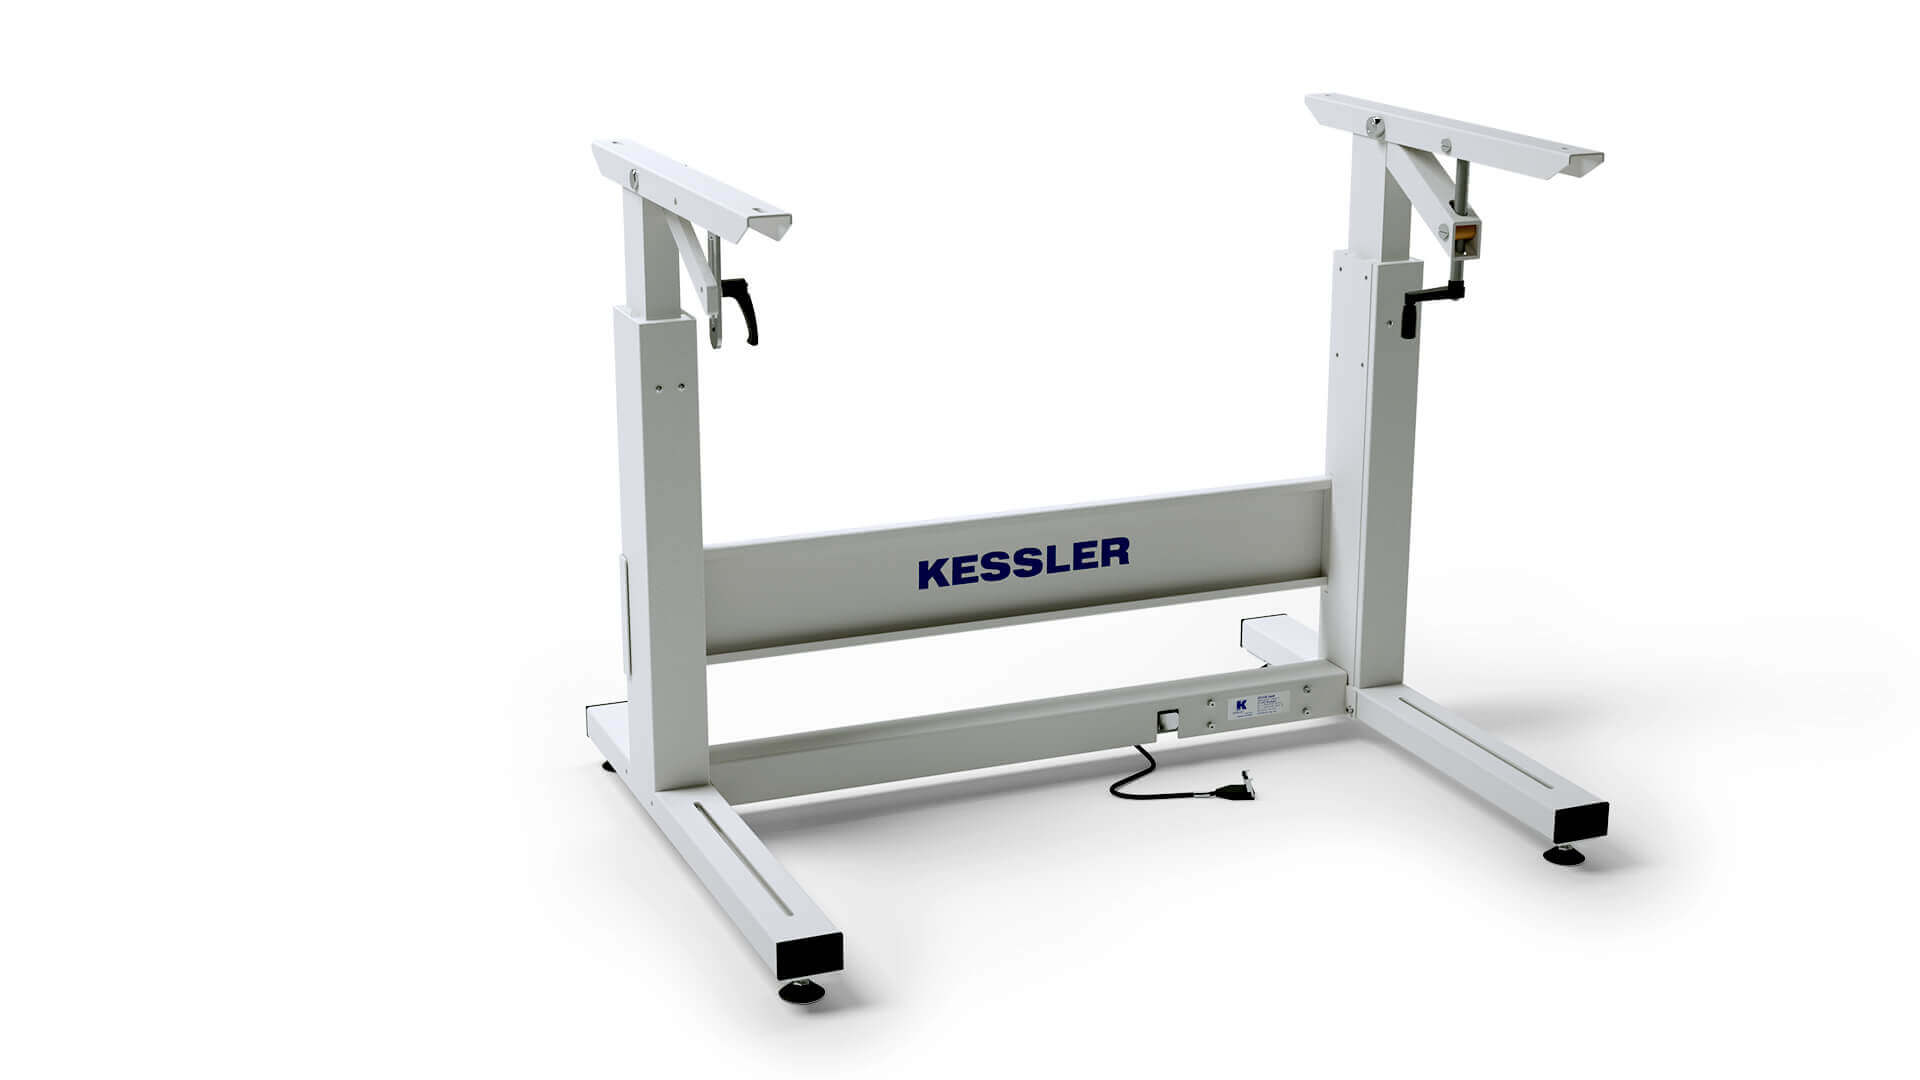 die Kessler GmbH aus Nusplingen